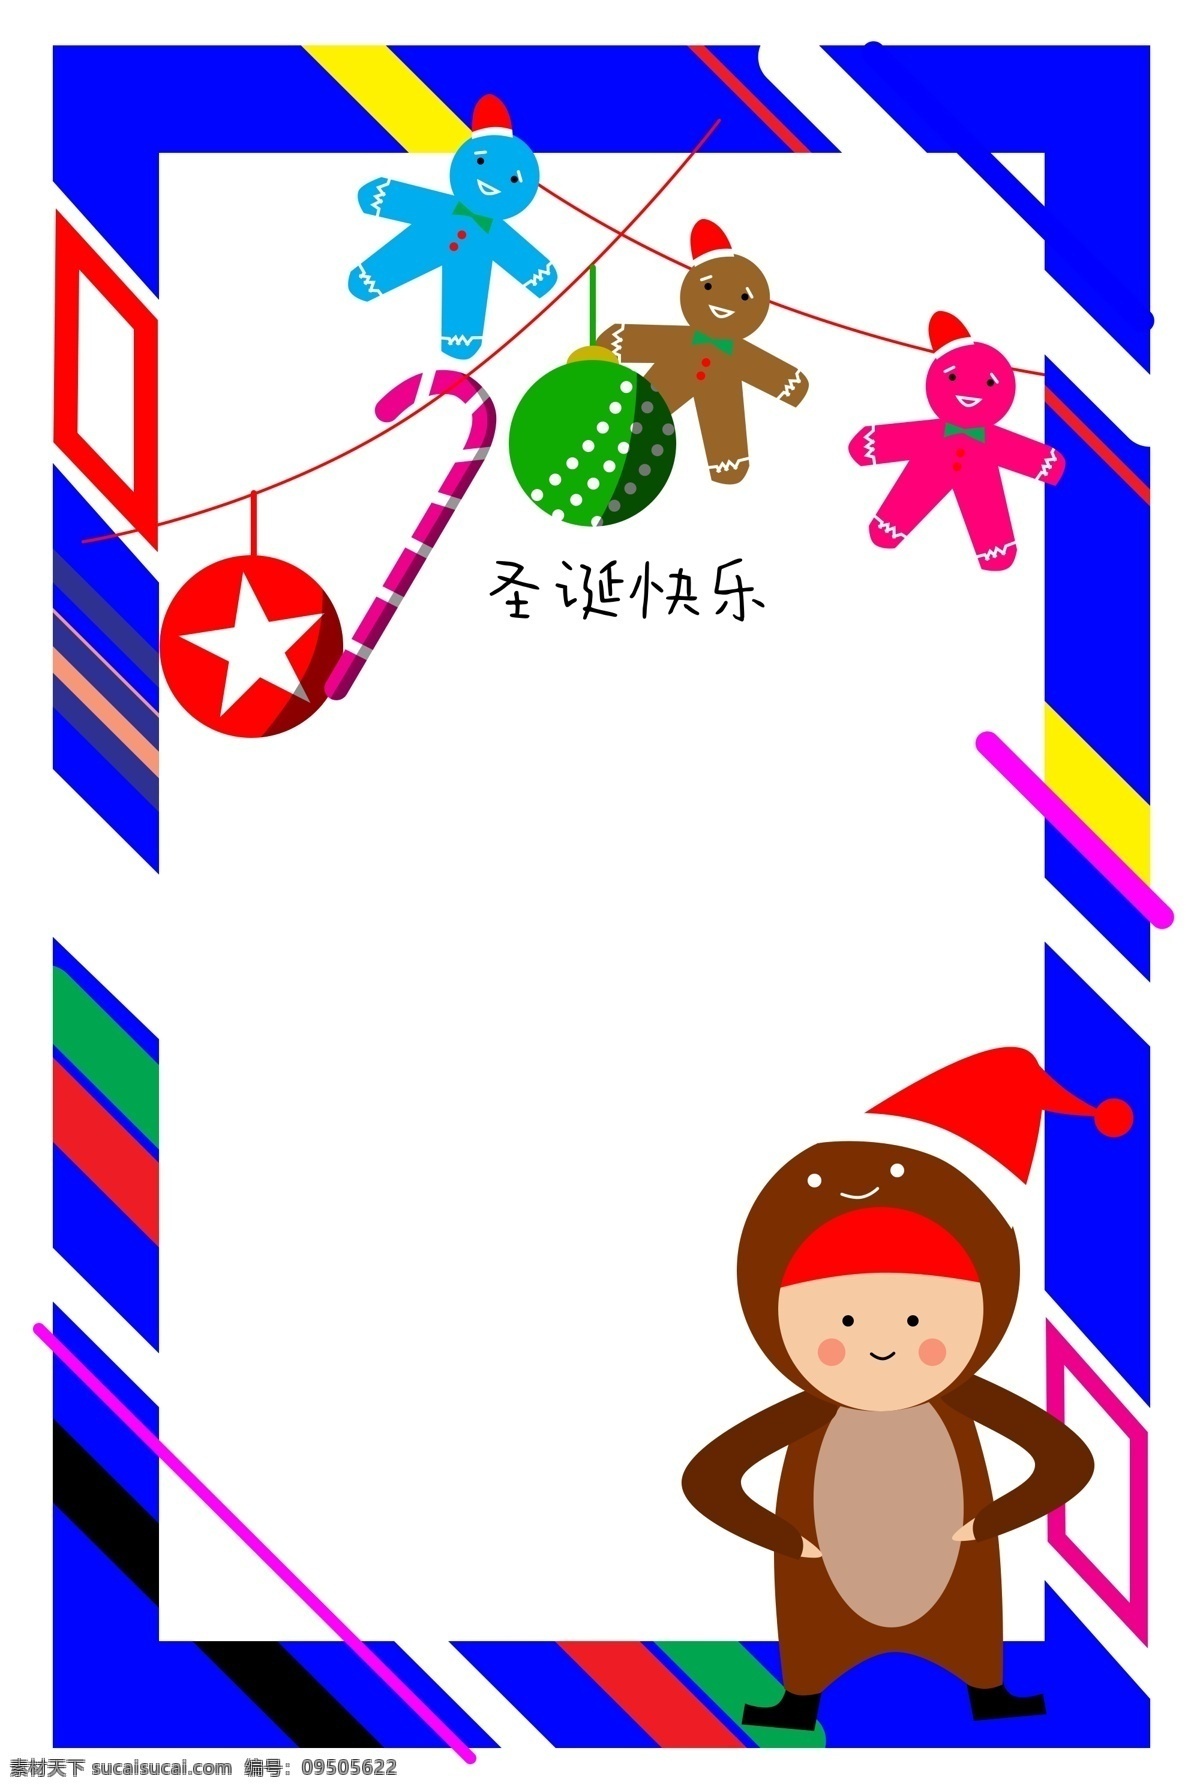 圣诞节 饼干 人物 边框 圣诞节边框 彩色的饼干 紫色的糖果 红色的五角星 红色的圣诞帽 卡通人物边框